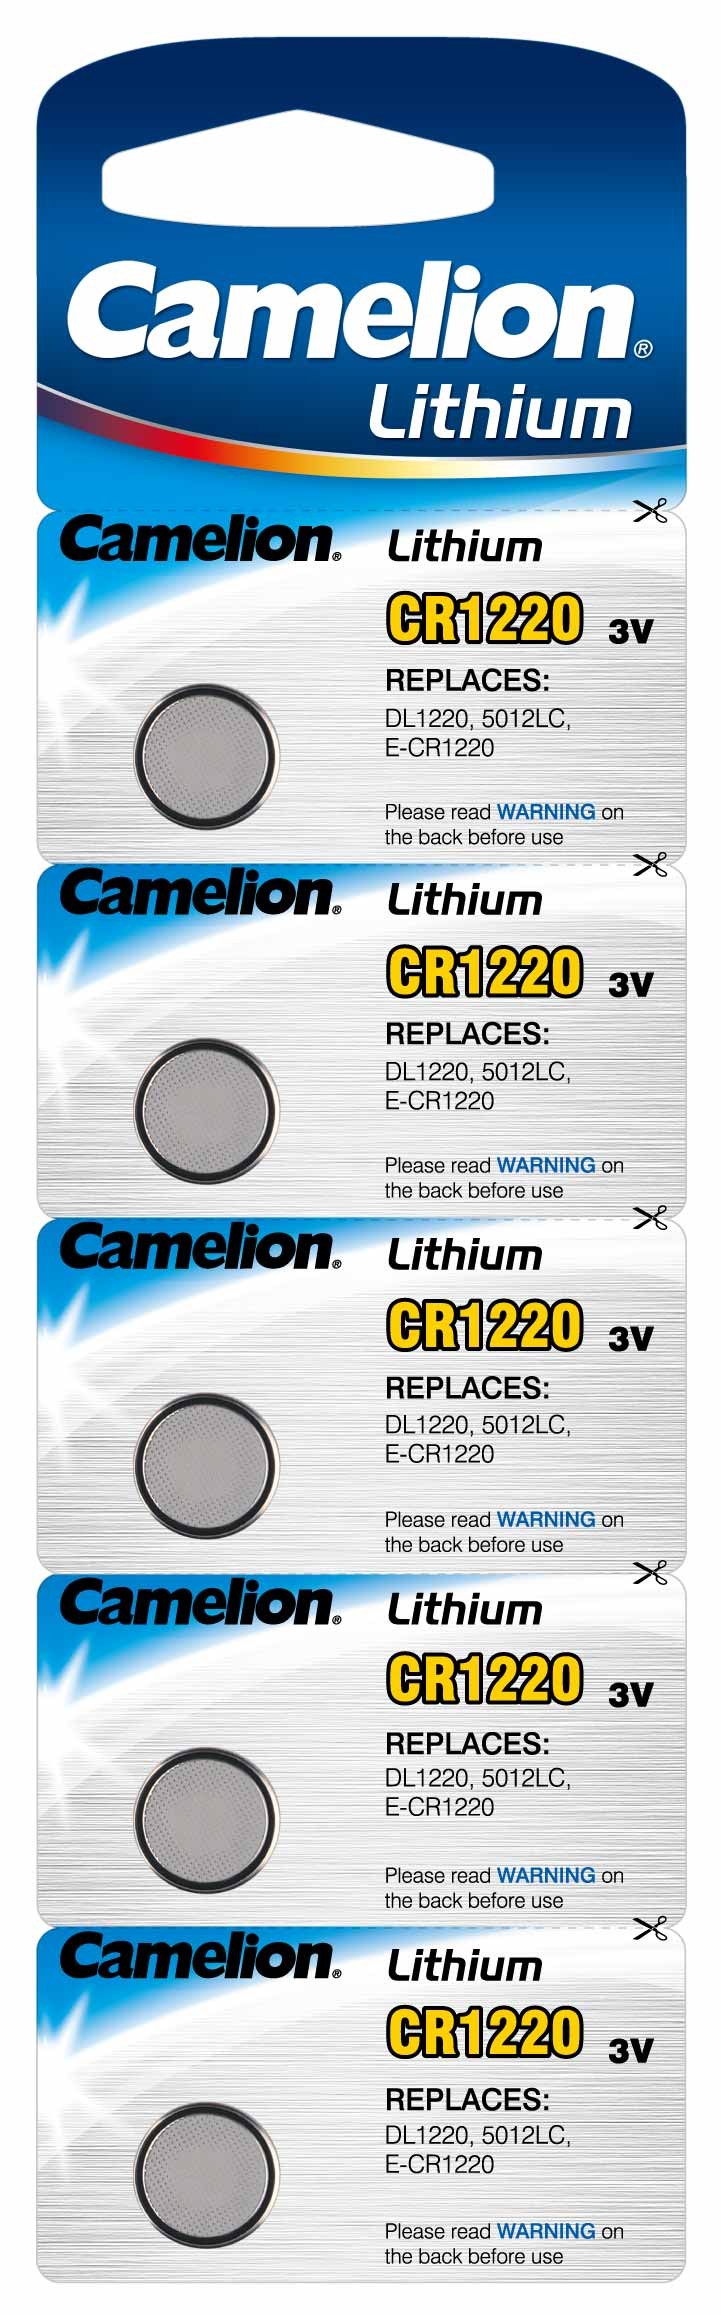 Blister 1 pile CR2025 3V Lithium Camelion